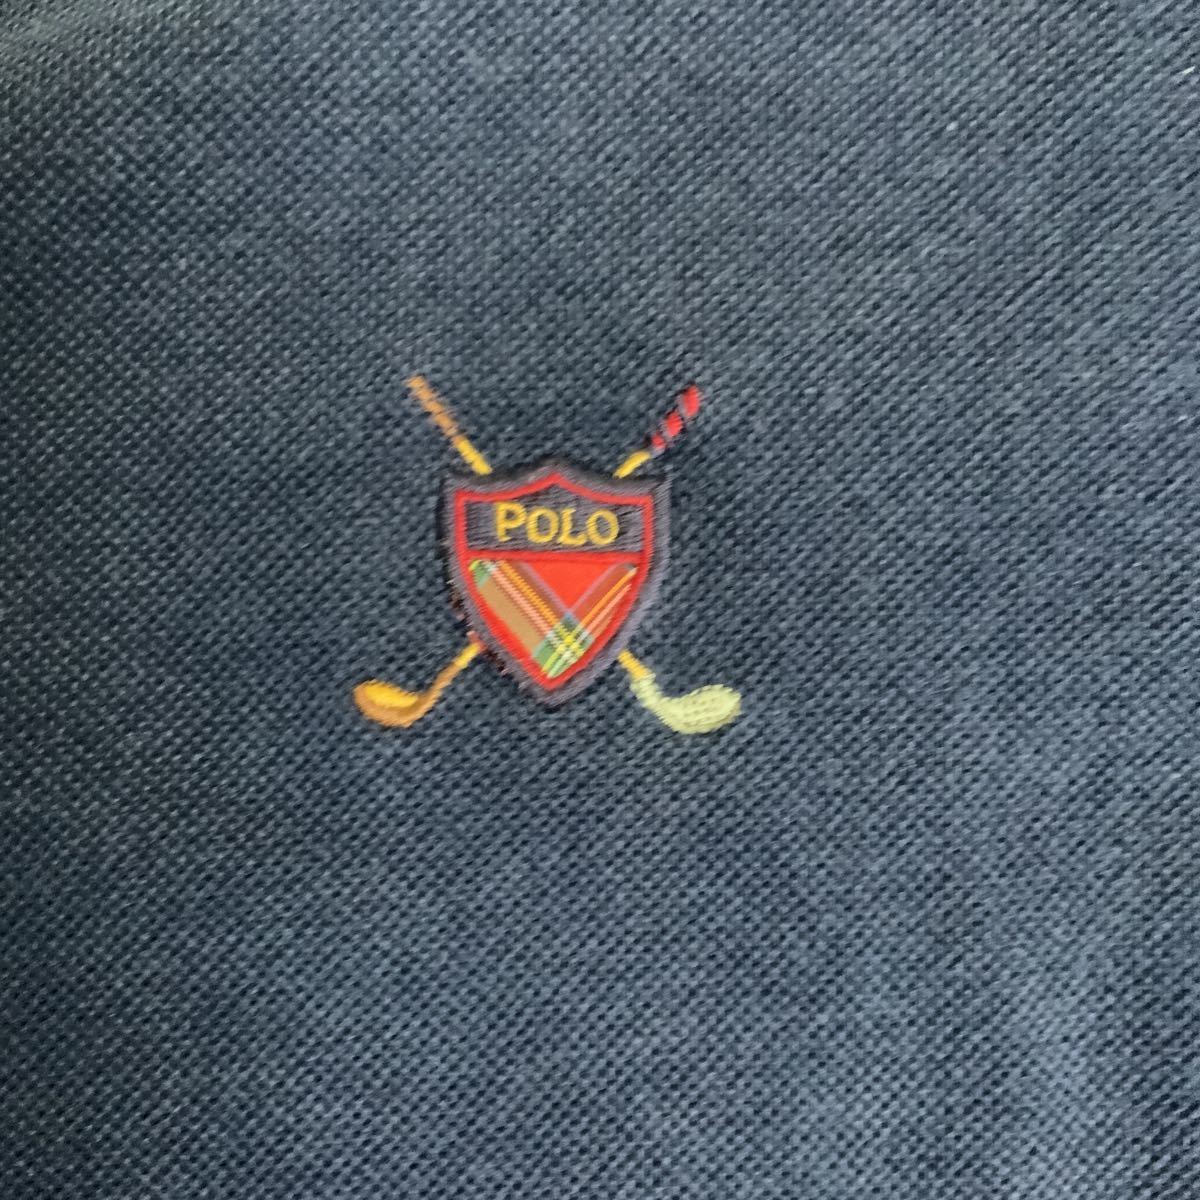 Polo golf Ralph Lauren V шея тренировочный футболка б/у одежда темно-синий цвет мужской M